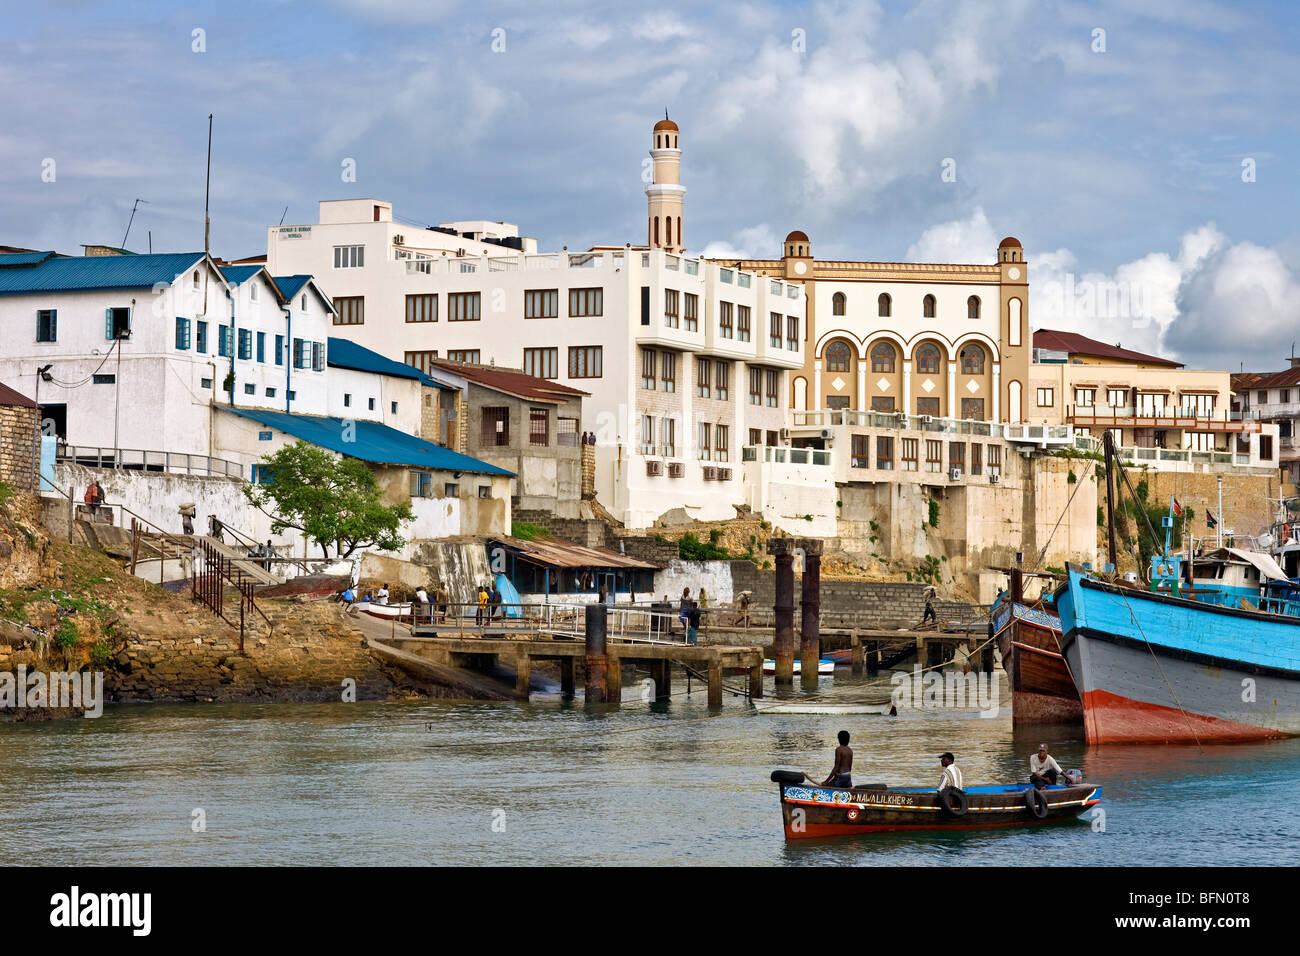 Kenia, Mombasa. Das Wasser vor der alten Dhau-Hafen in Mombasa jetzt flach ausgearbeitet Schiffe für Küstenfahrt verwendet. Stockfoto